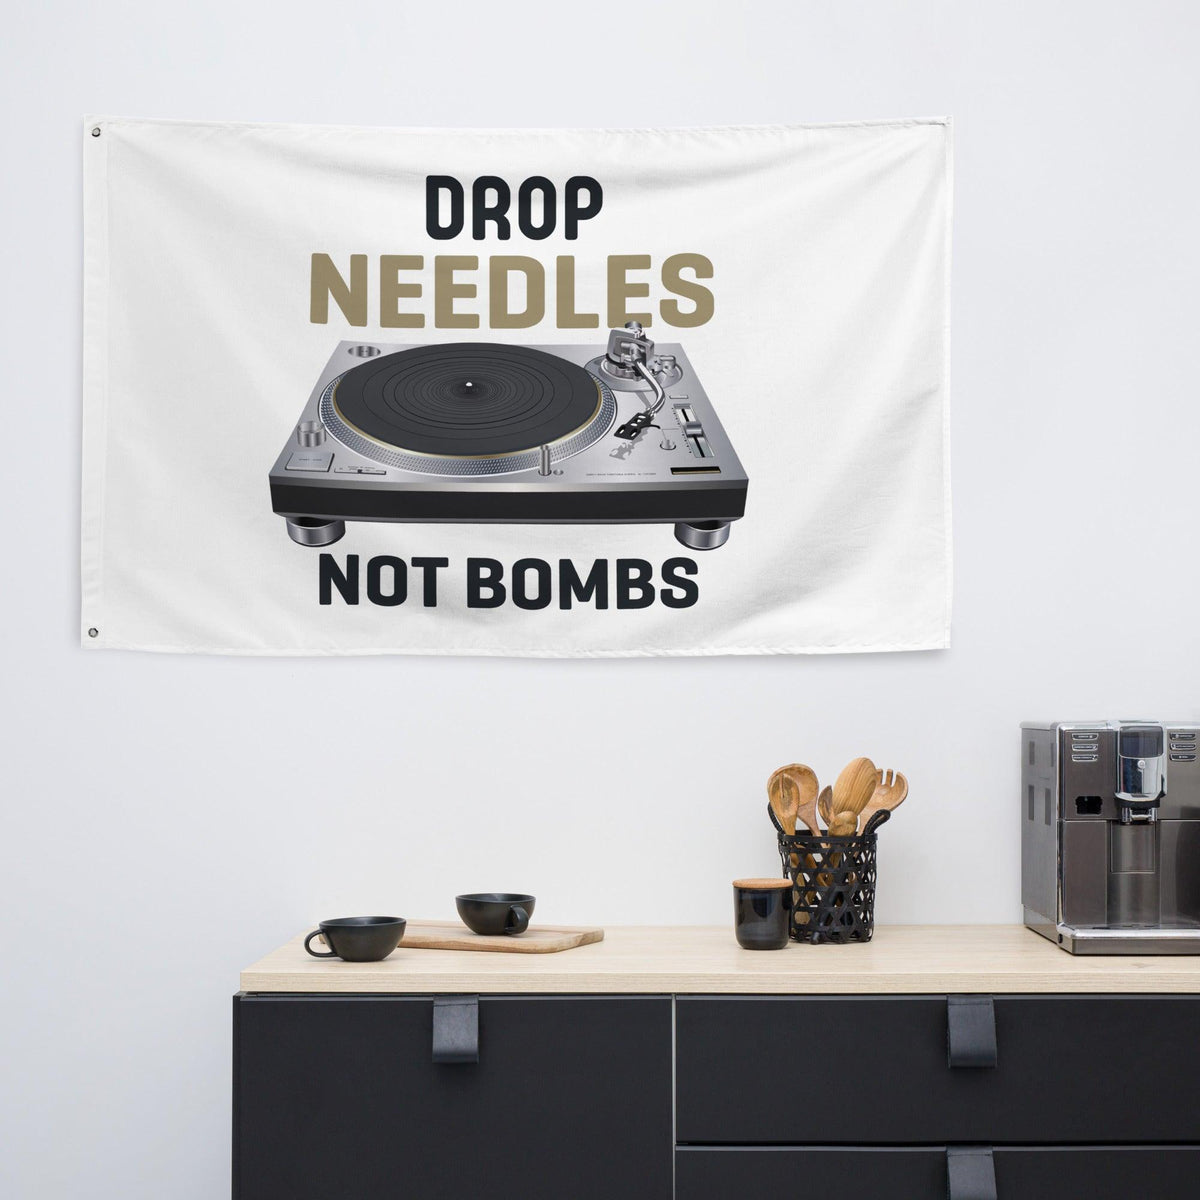 Technics Turntable Artist Rendition "Drop Needles Not Bombs" Flag (Horizontal) - Tedeschi Studio, LLC.